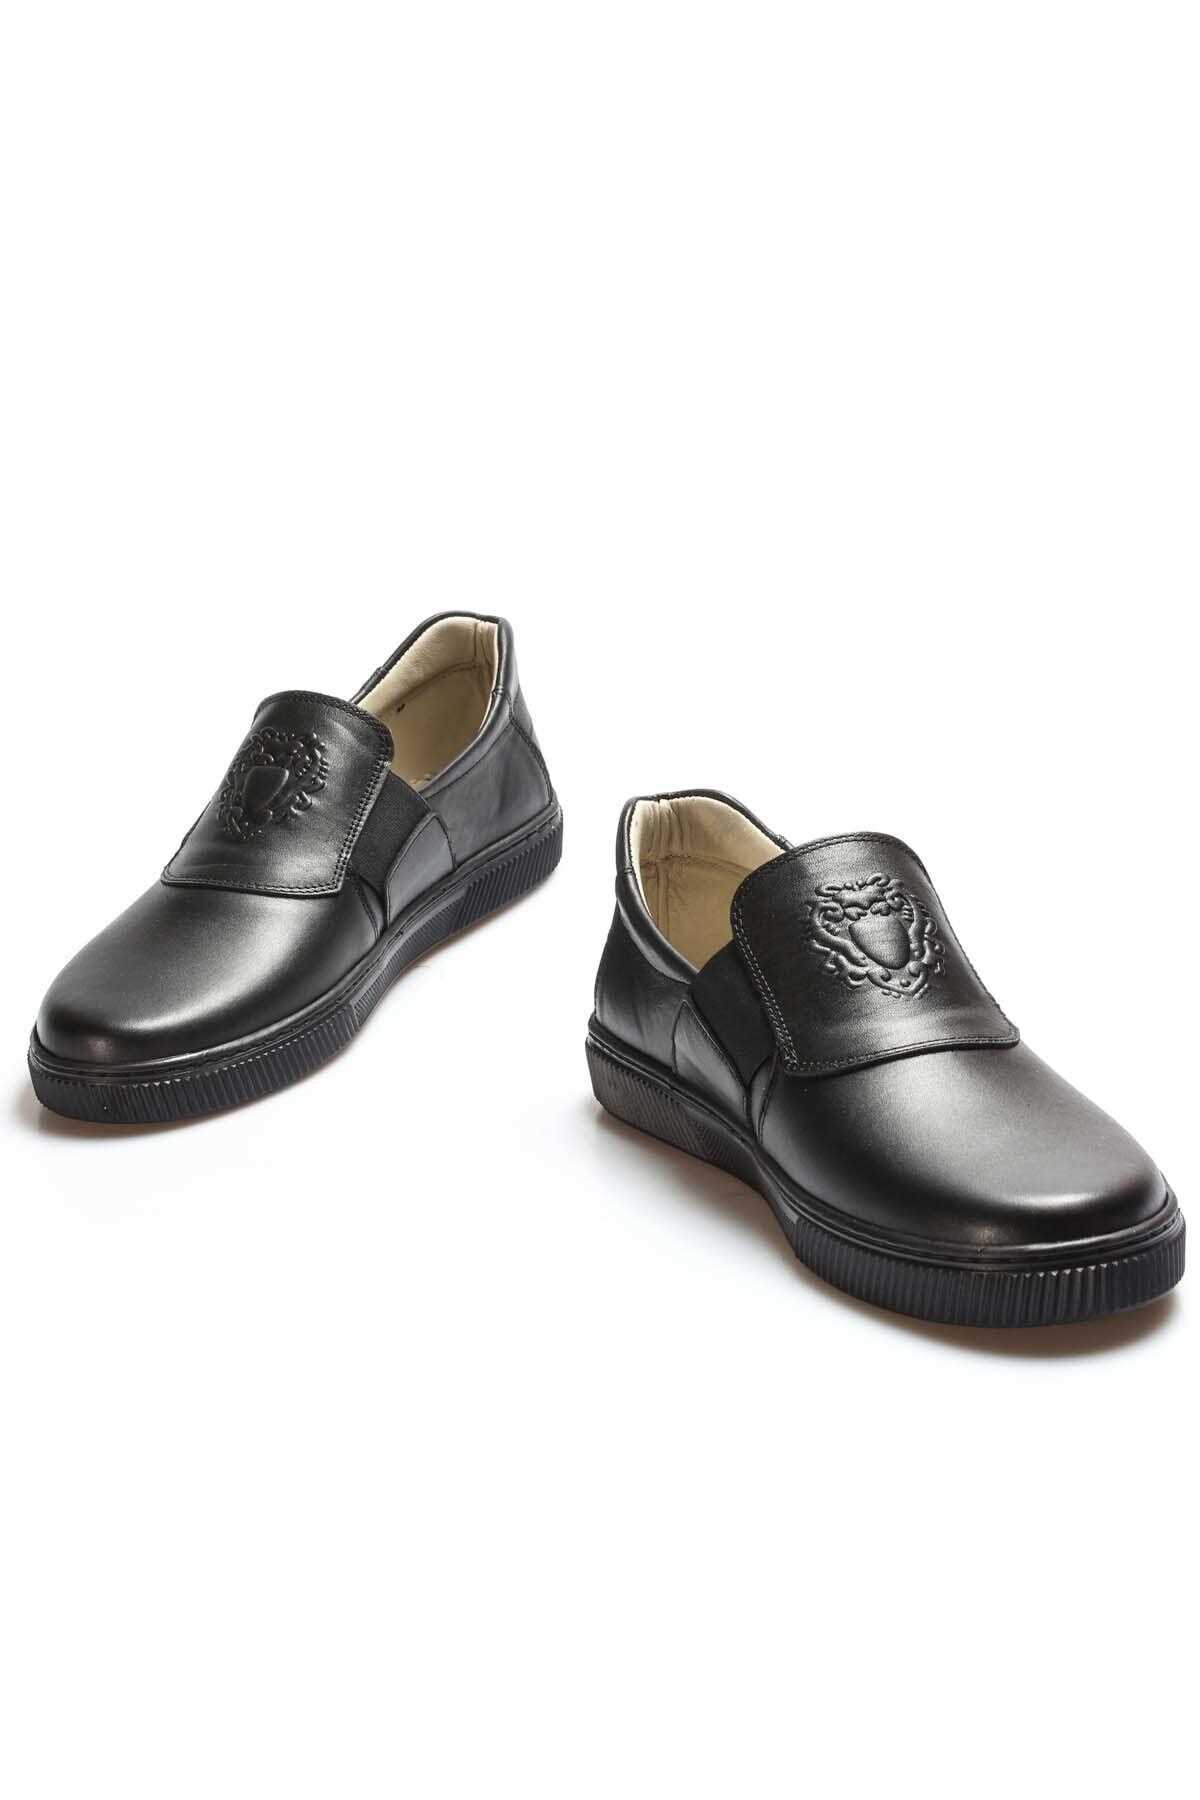 خرید مستقیم کفش روزمره بچه گانه پسرانه شیک FAST STEP رنگ مشکی کد ty47132251